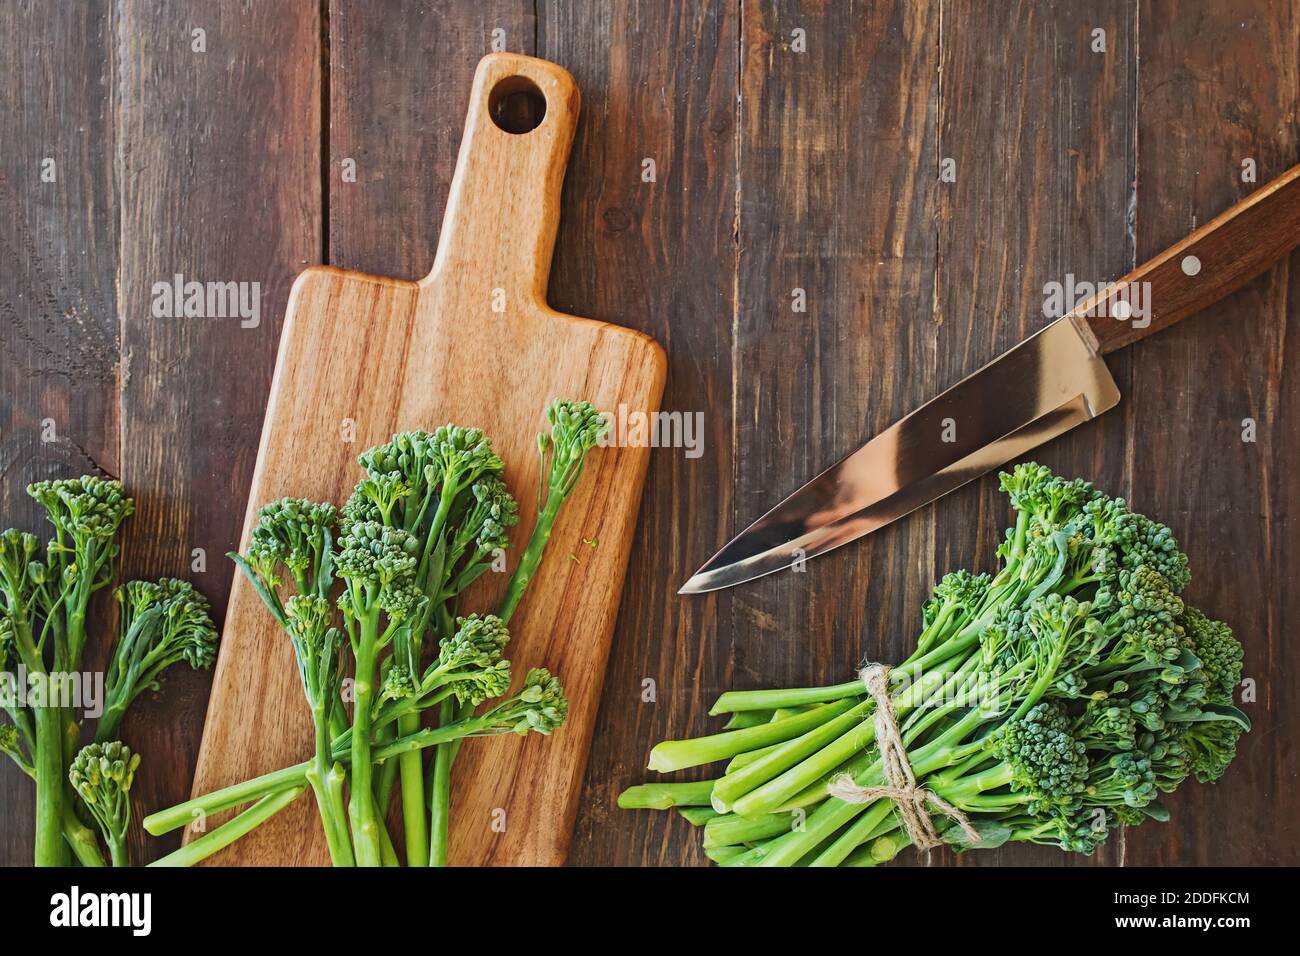 Légumes broccolini sur table en bois Banque D'Images